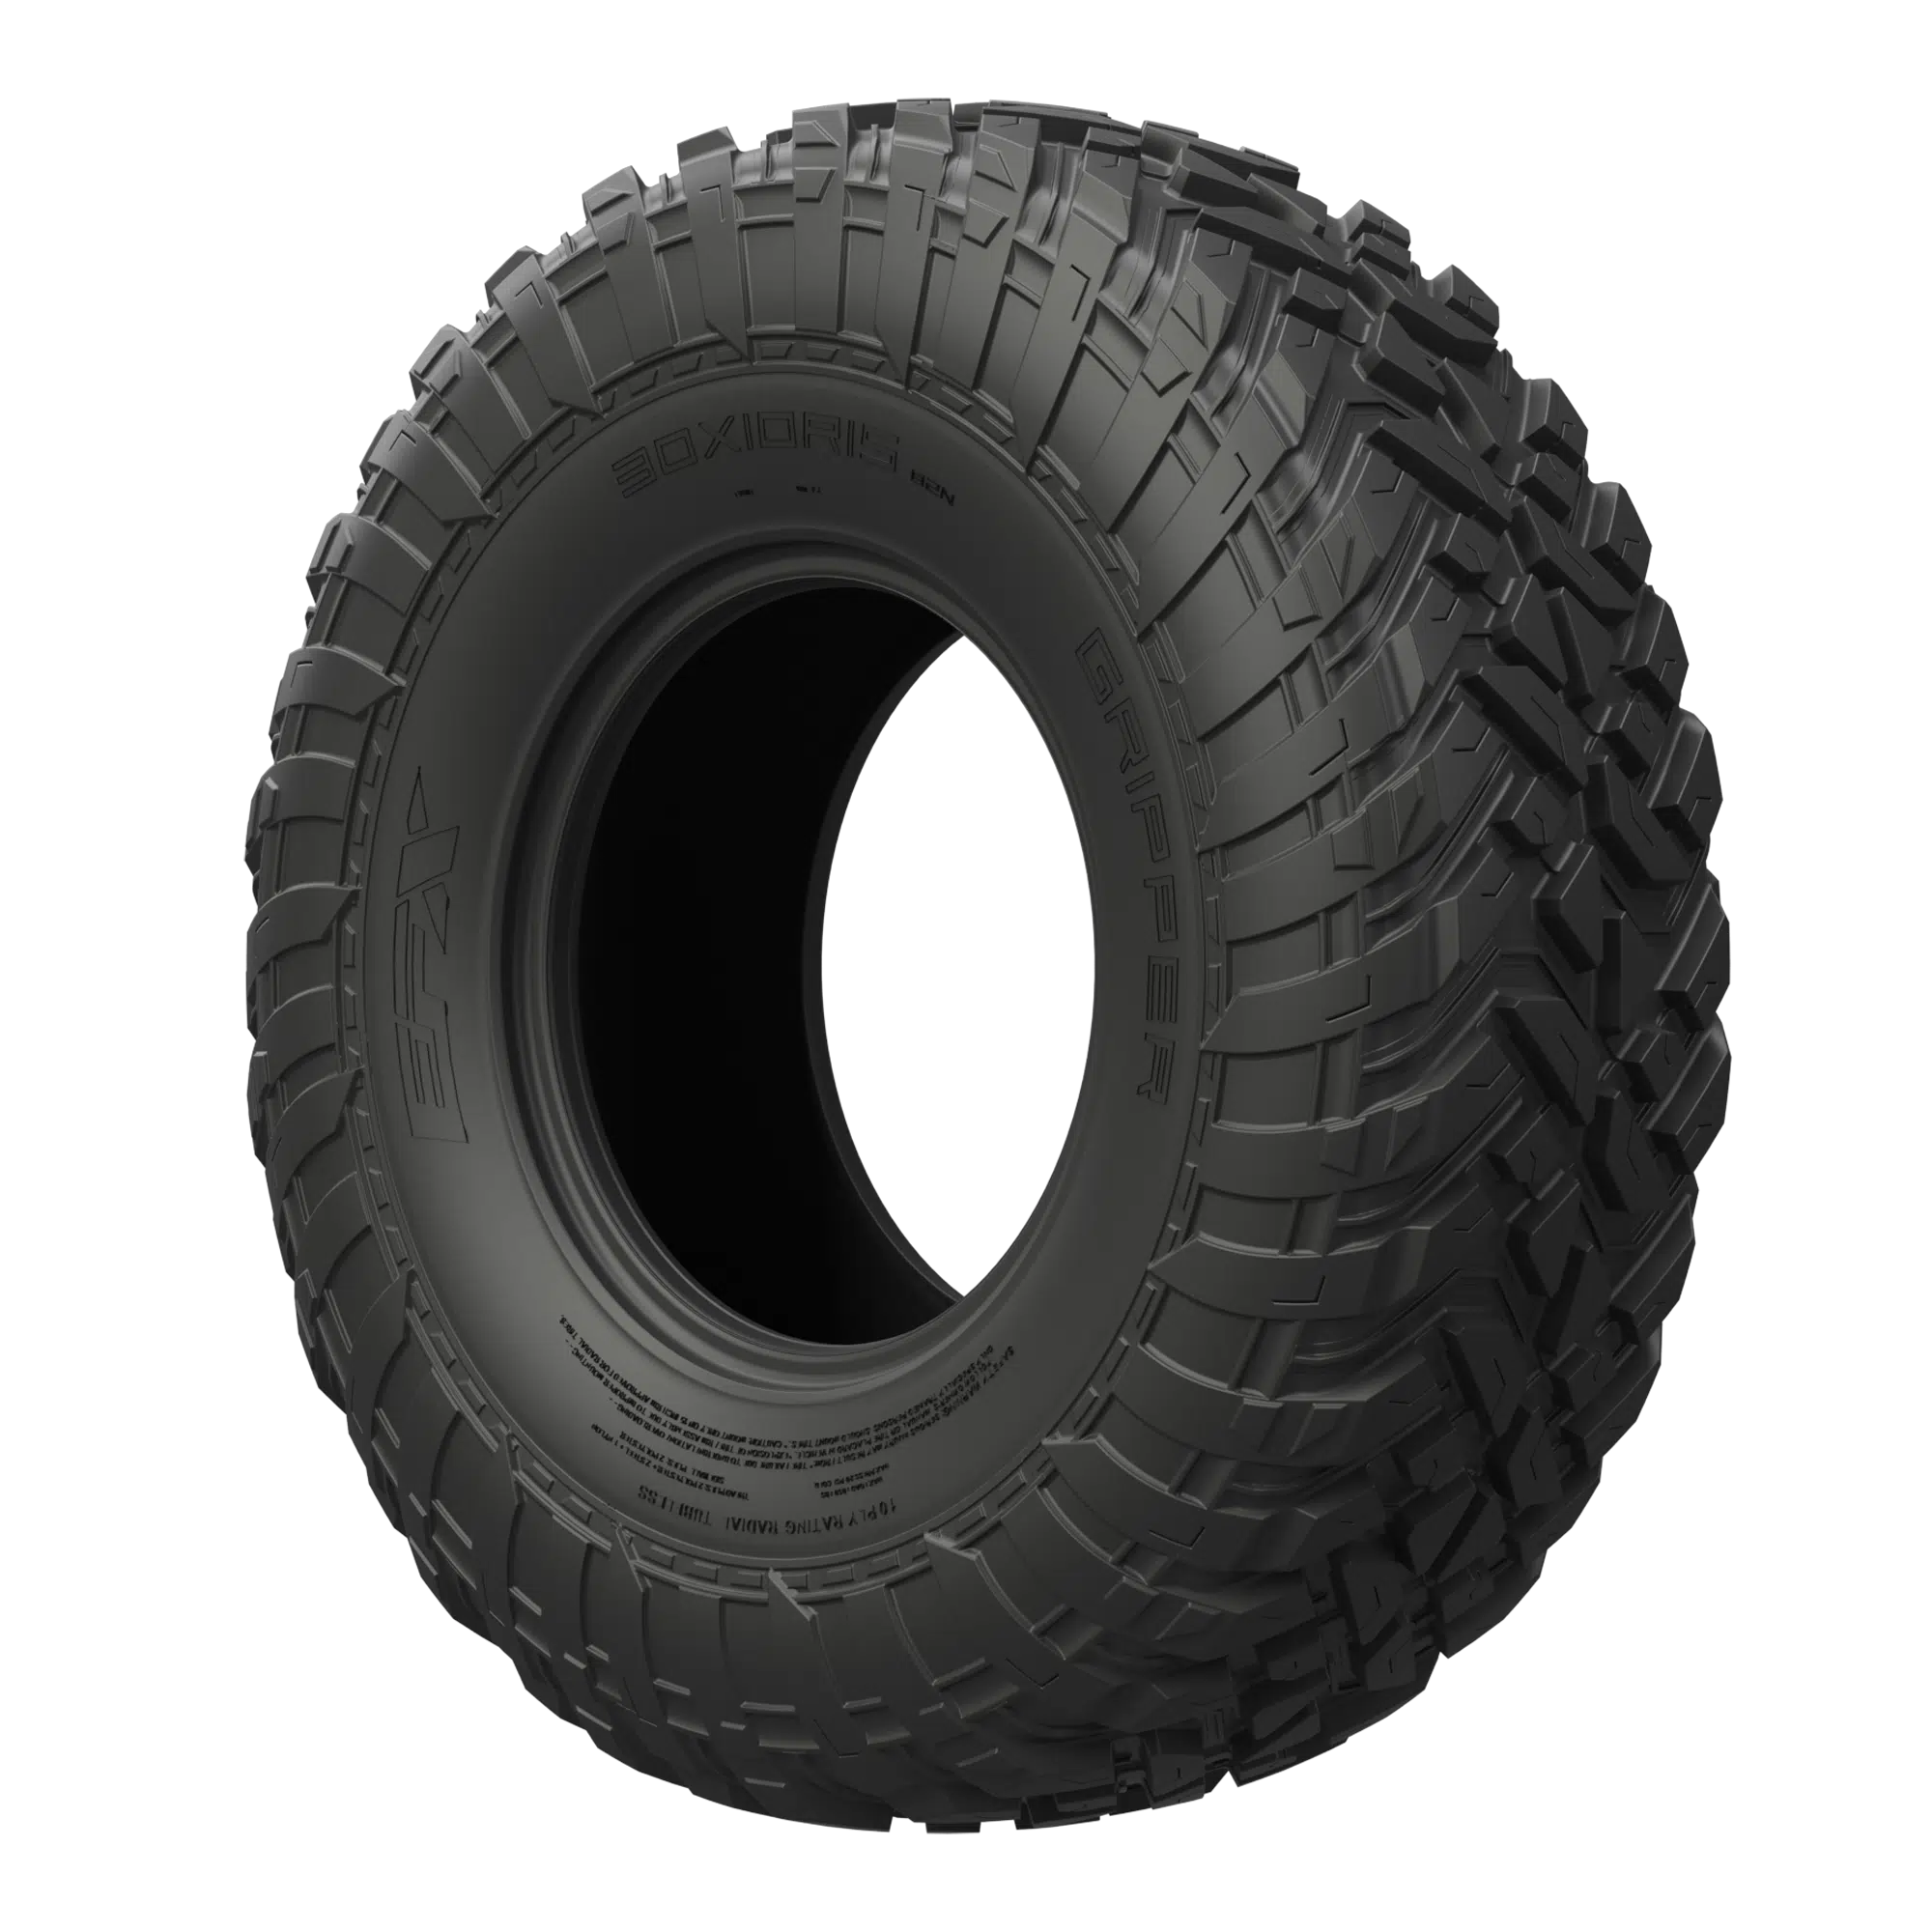 GRIPPER UTV-Tires-EFX-28X10-14-Black Market UTV